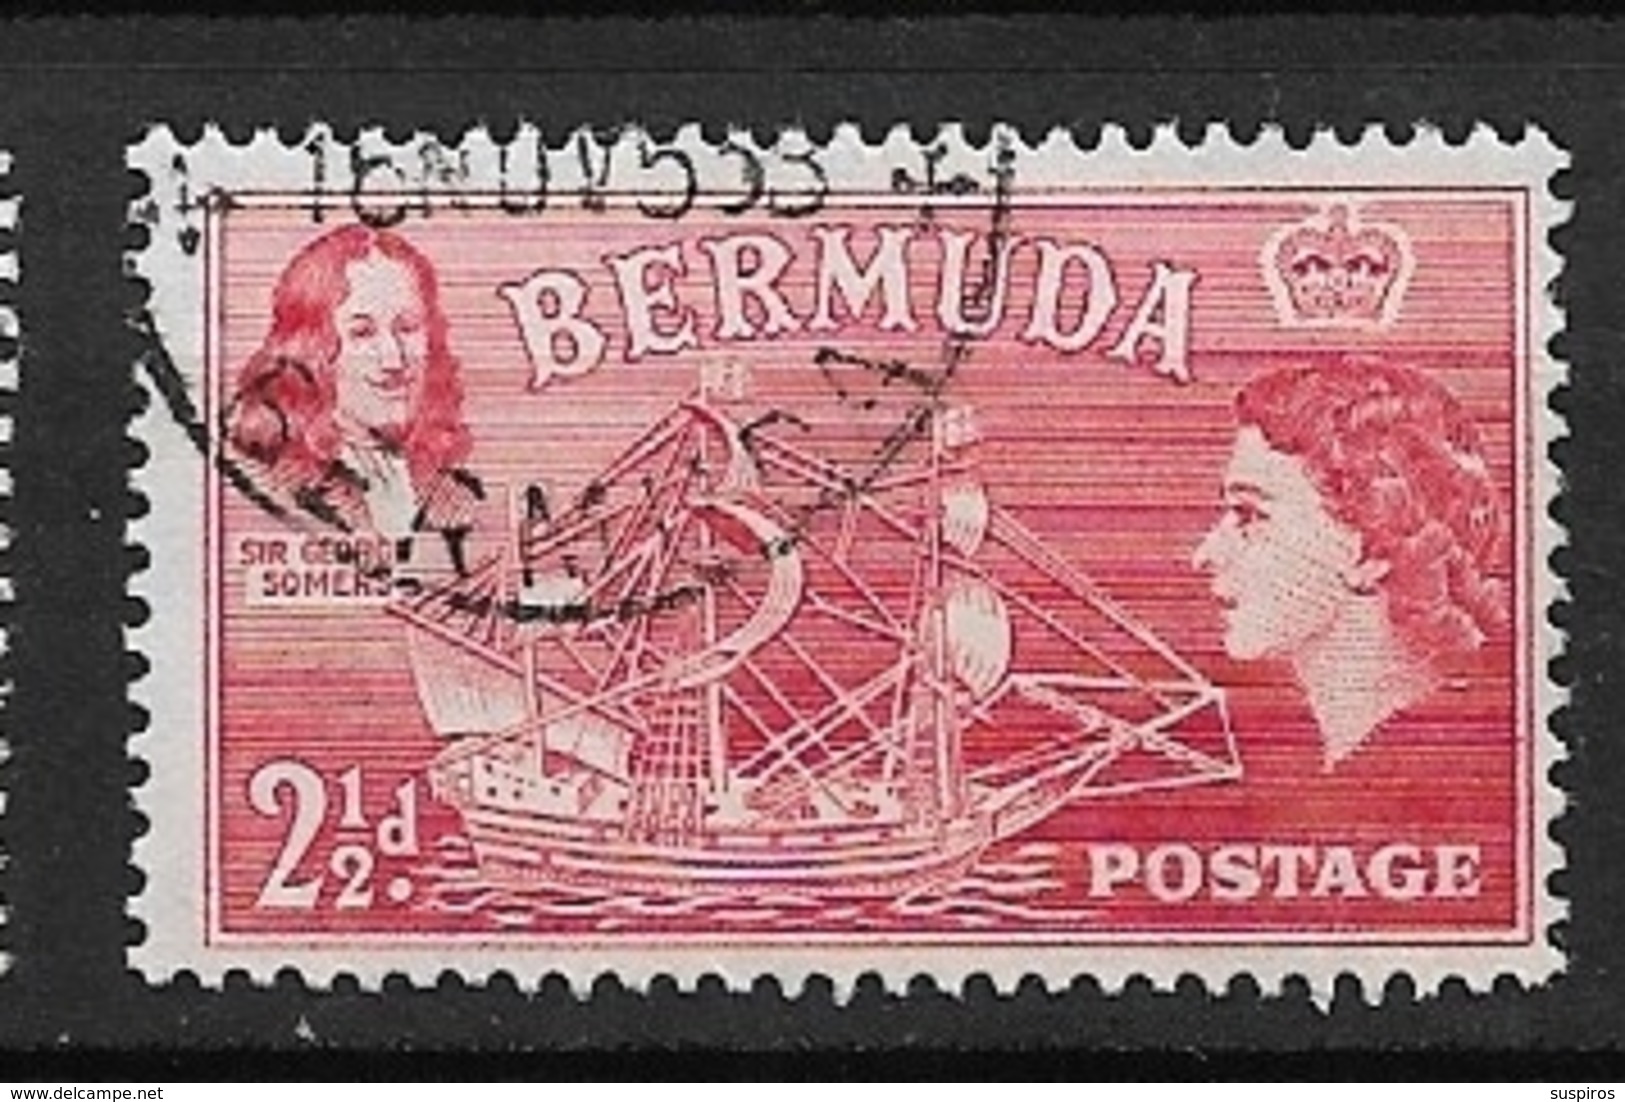 BERMUDA   1953 Local Motives And Queen Elizabeth II   Sir George Somers And "Sea Venture"  USED - Bermuda